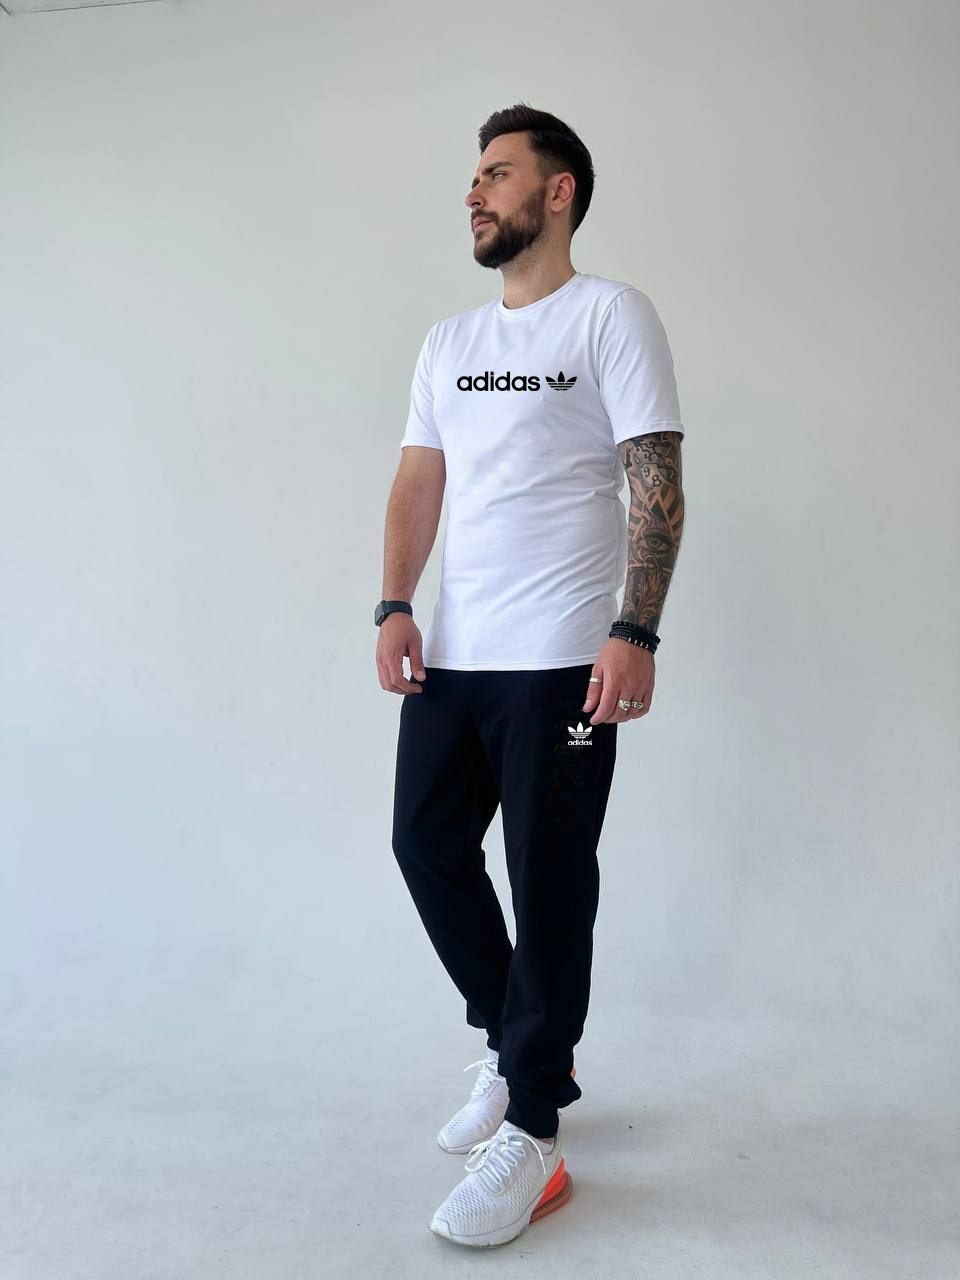 Adidas летний спортивный костюм мужской с футболкой  Турция S-2XL